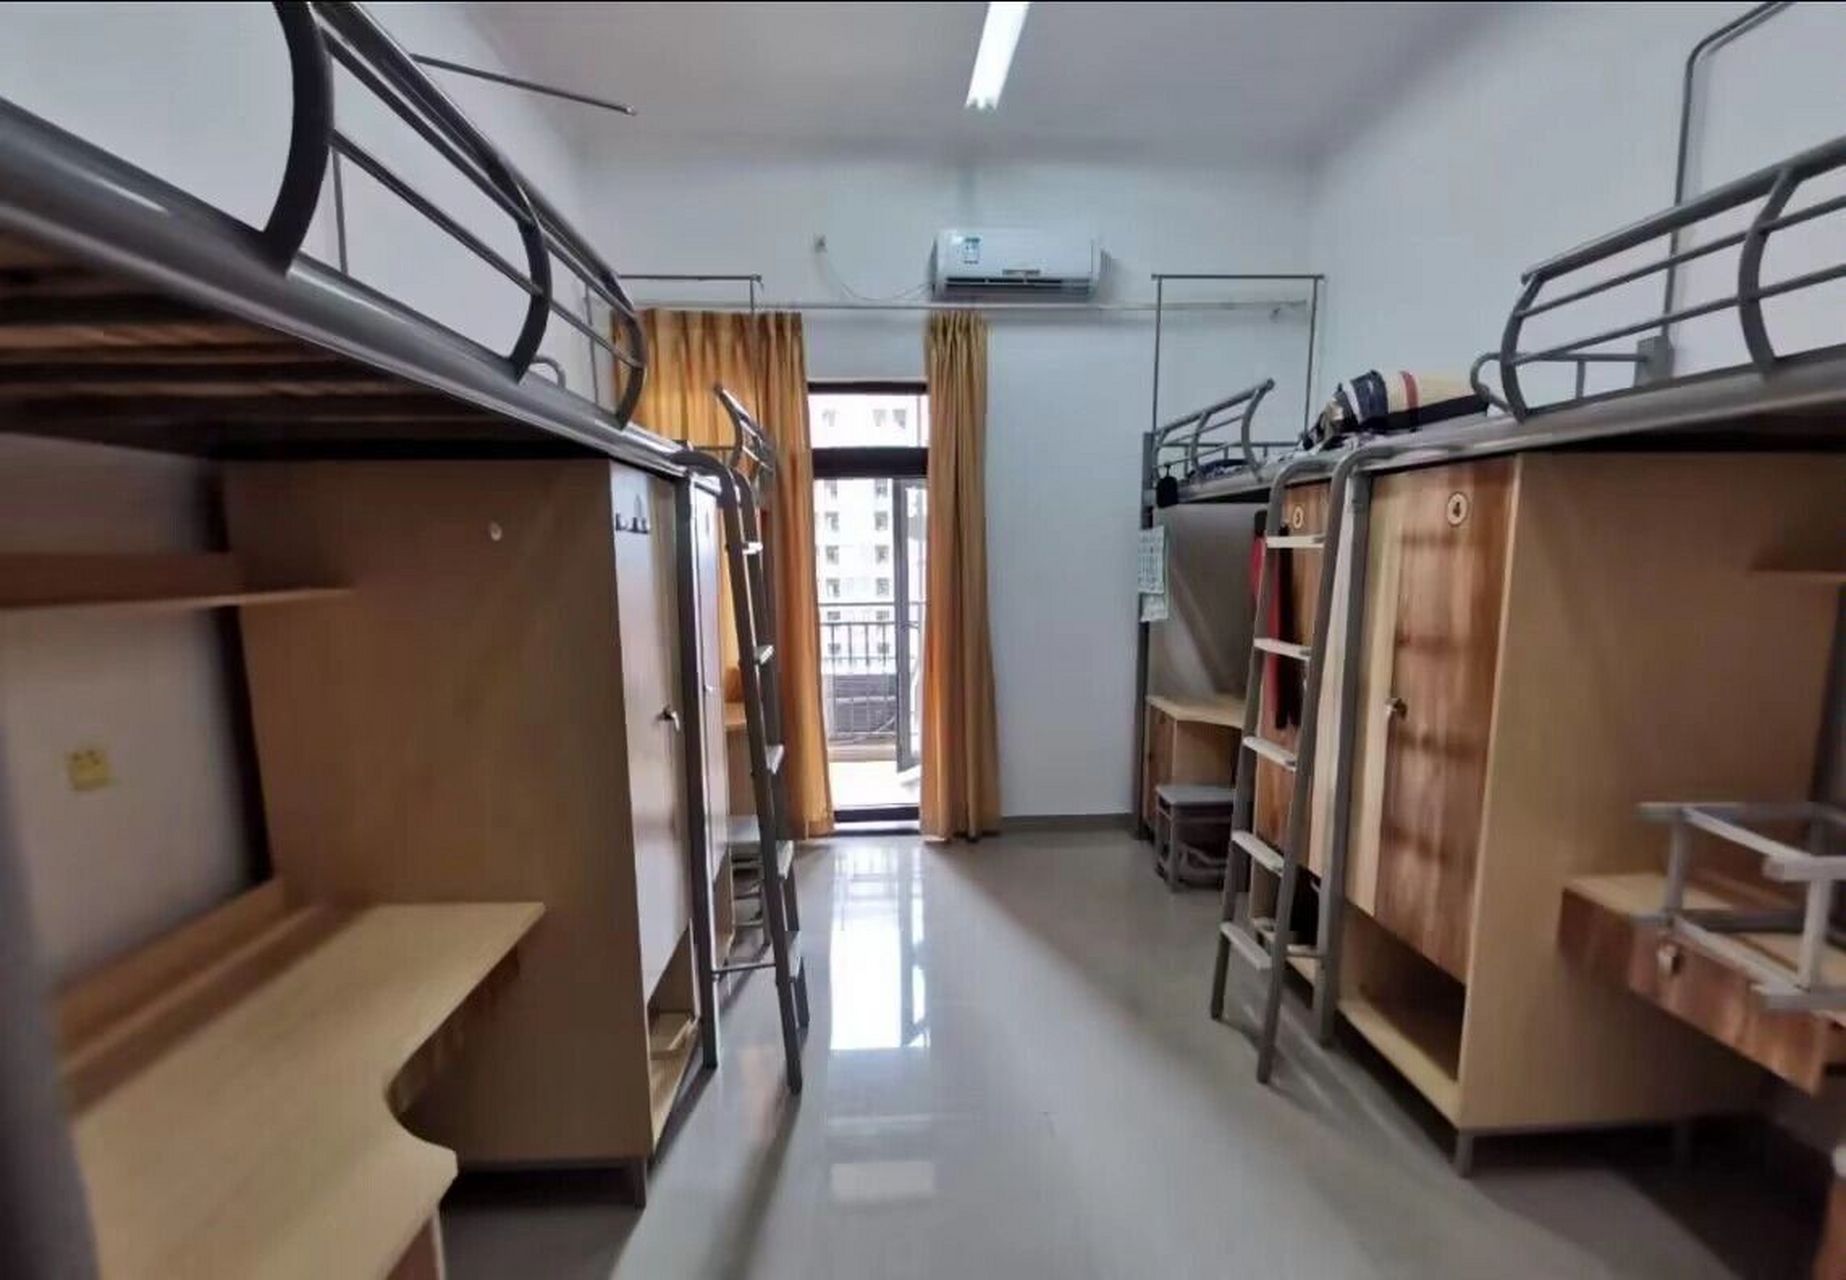 重庆大学宿舍图片内景图片